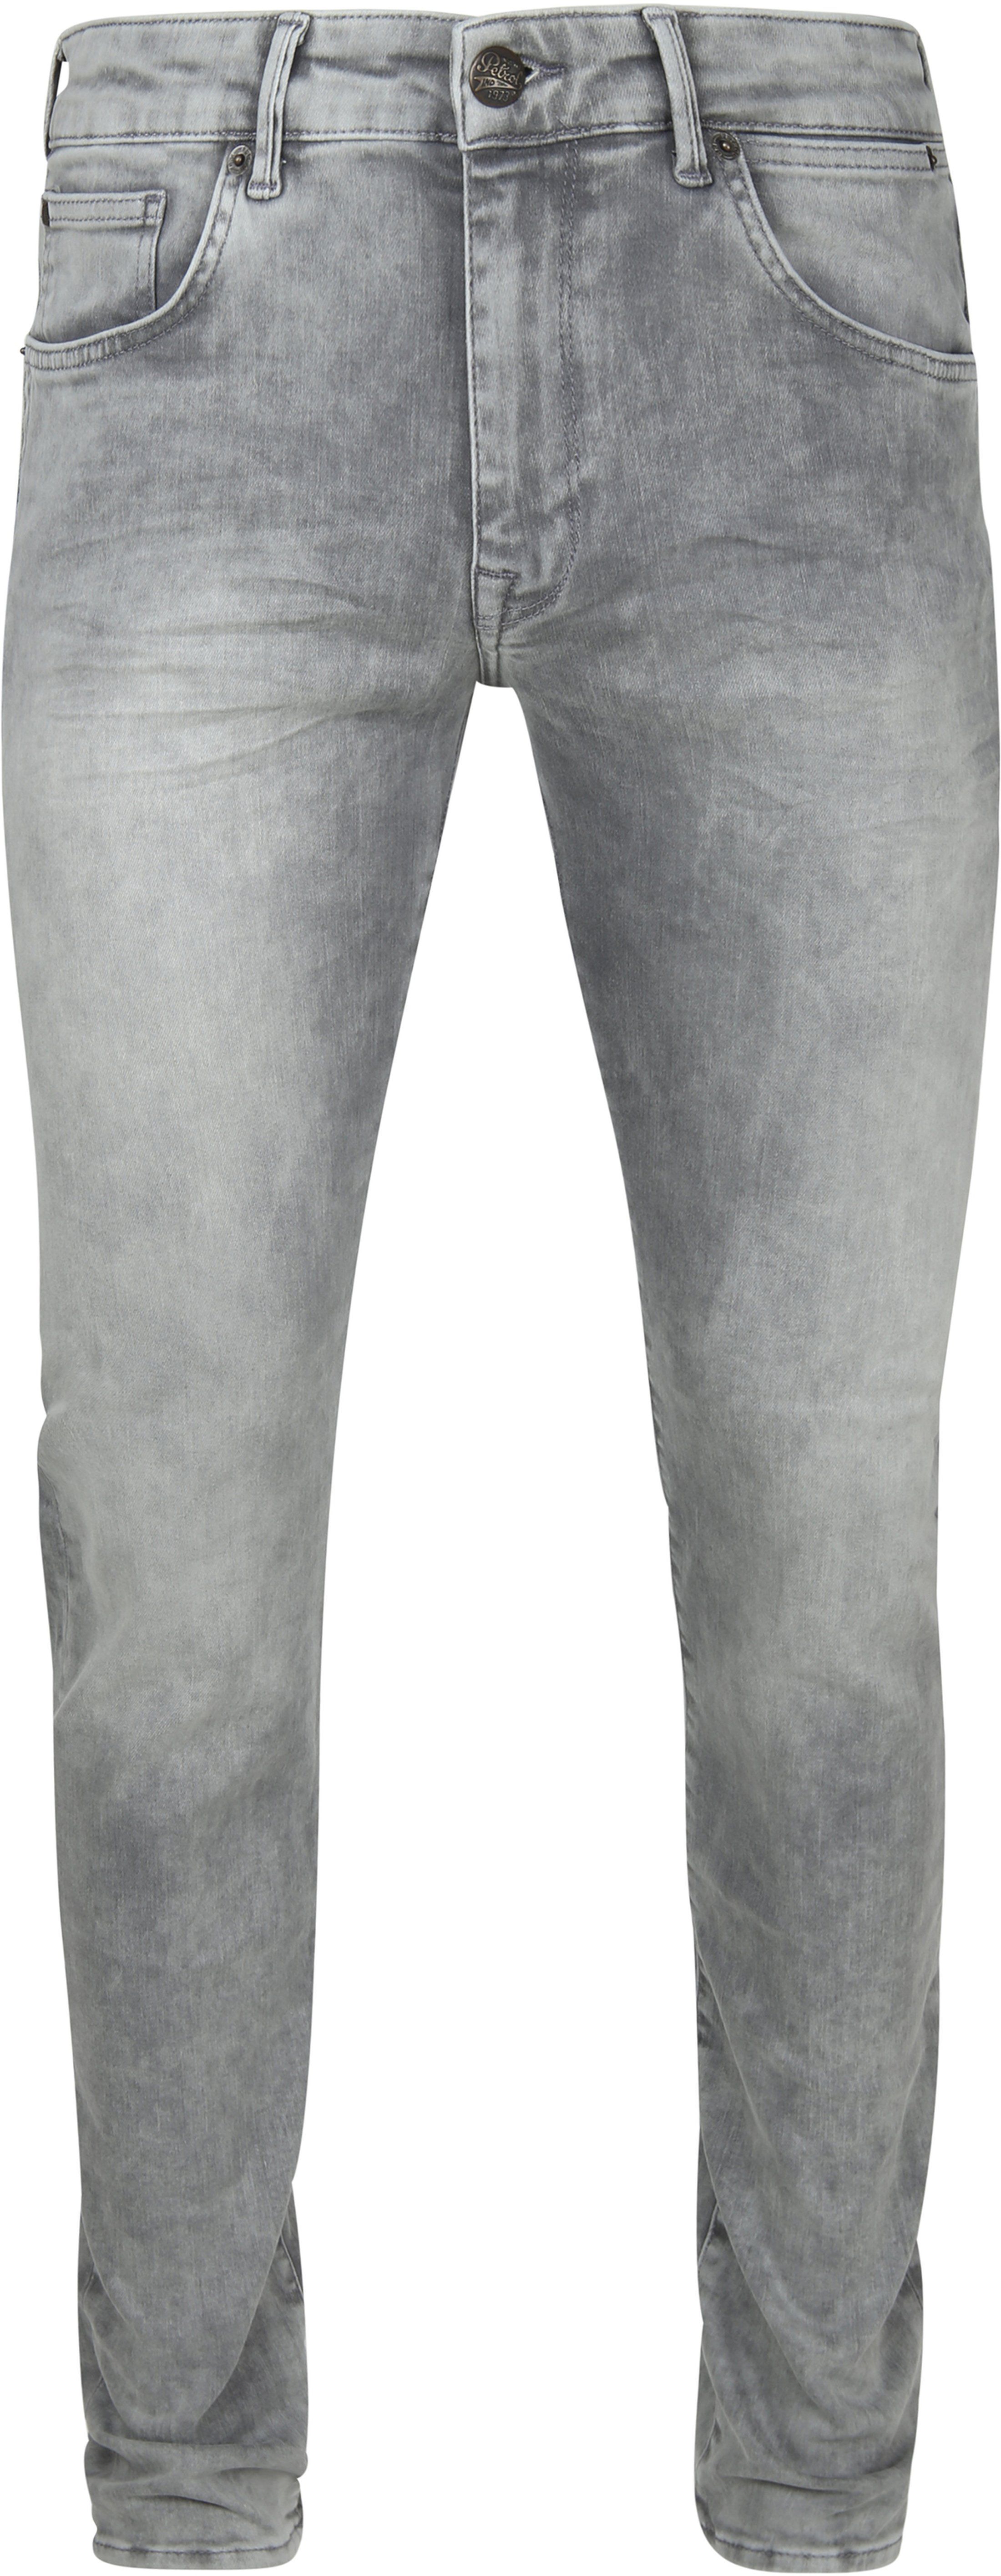 Petrol Seaham Jeans Grey size W 31